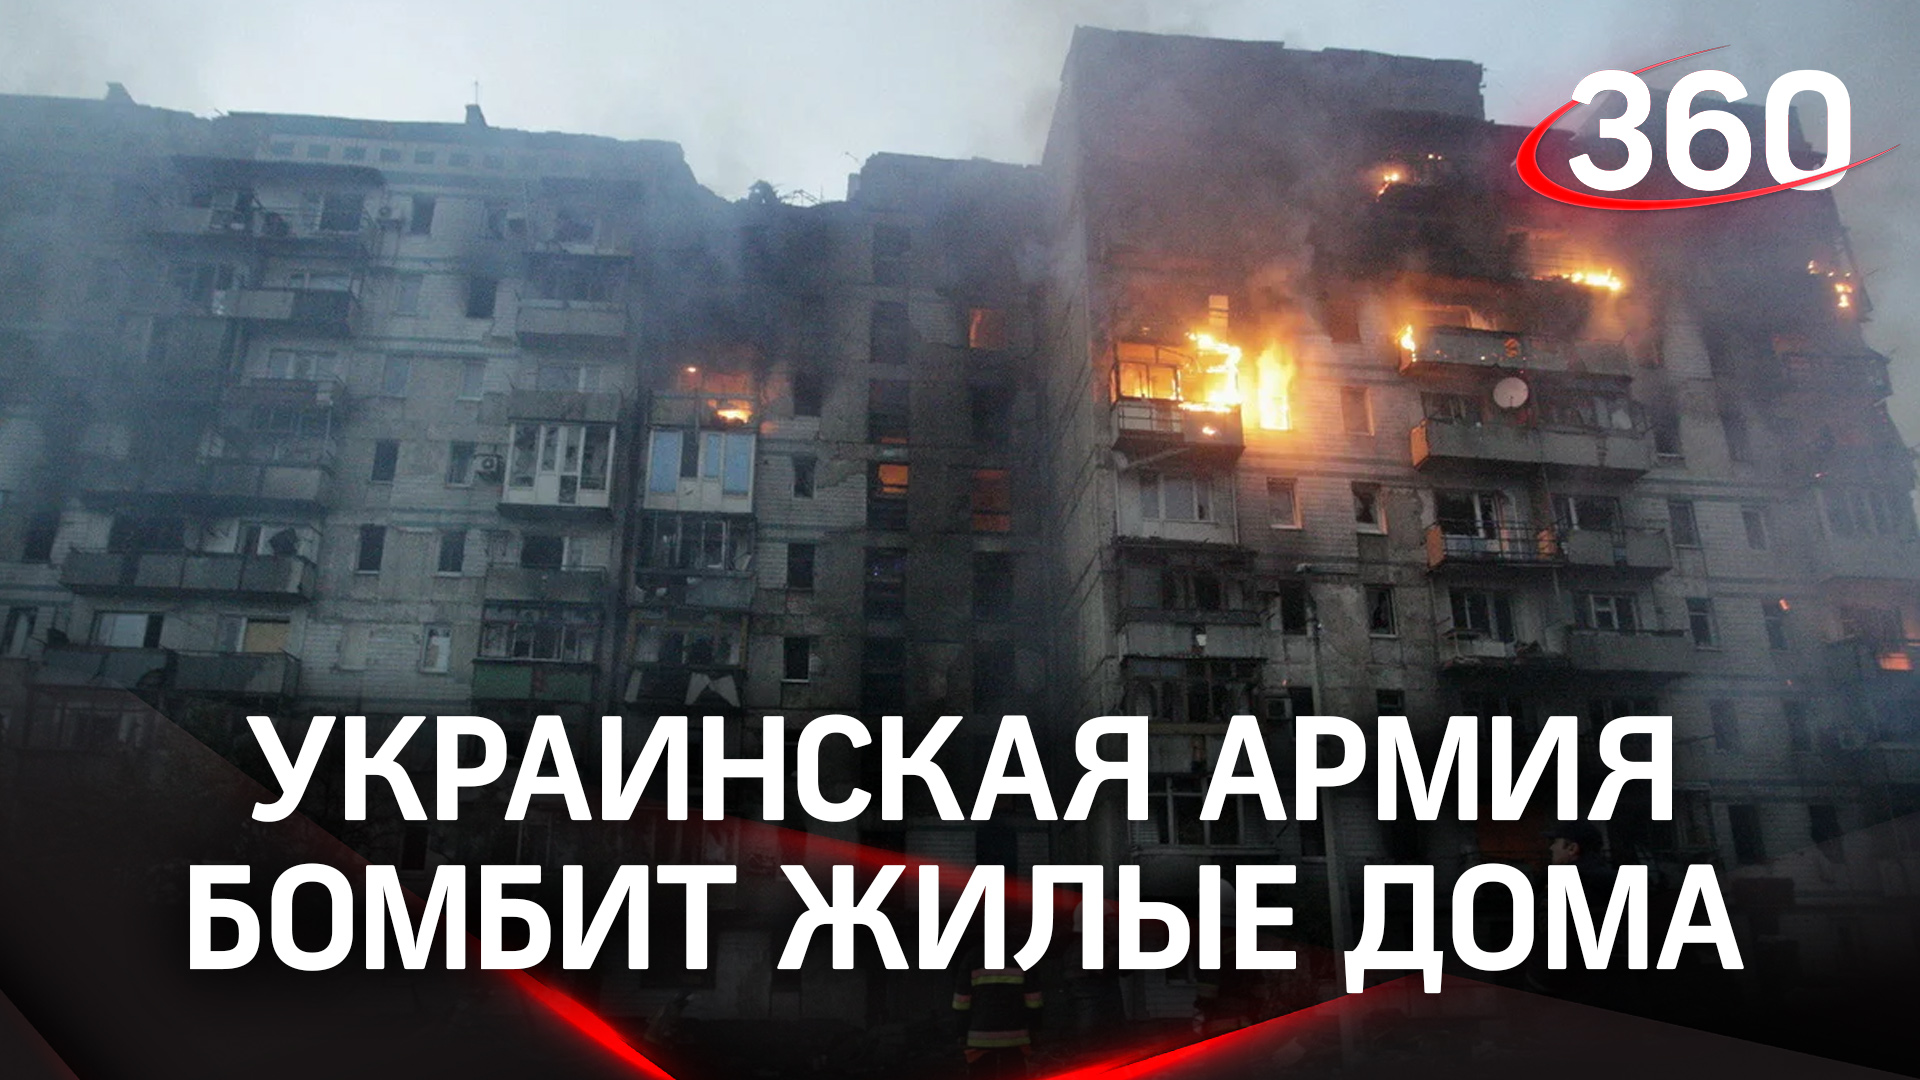 ВСУ бомбит жилые районы Донецка: горят дома и магазины, есть пострадавшие